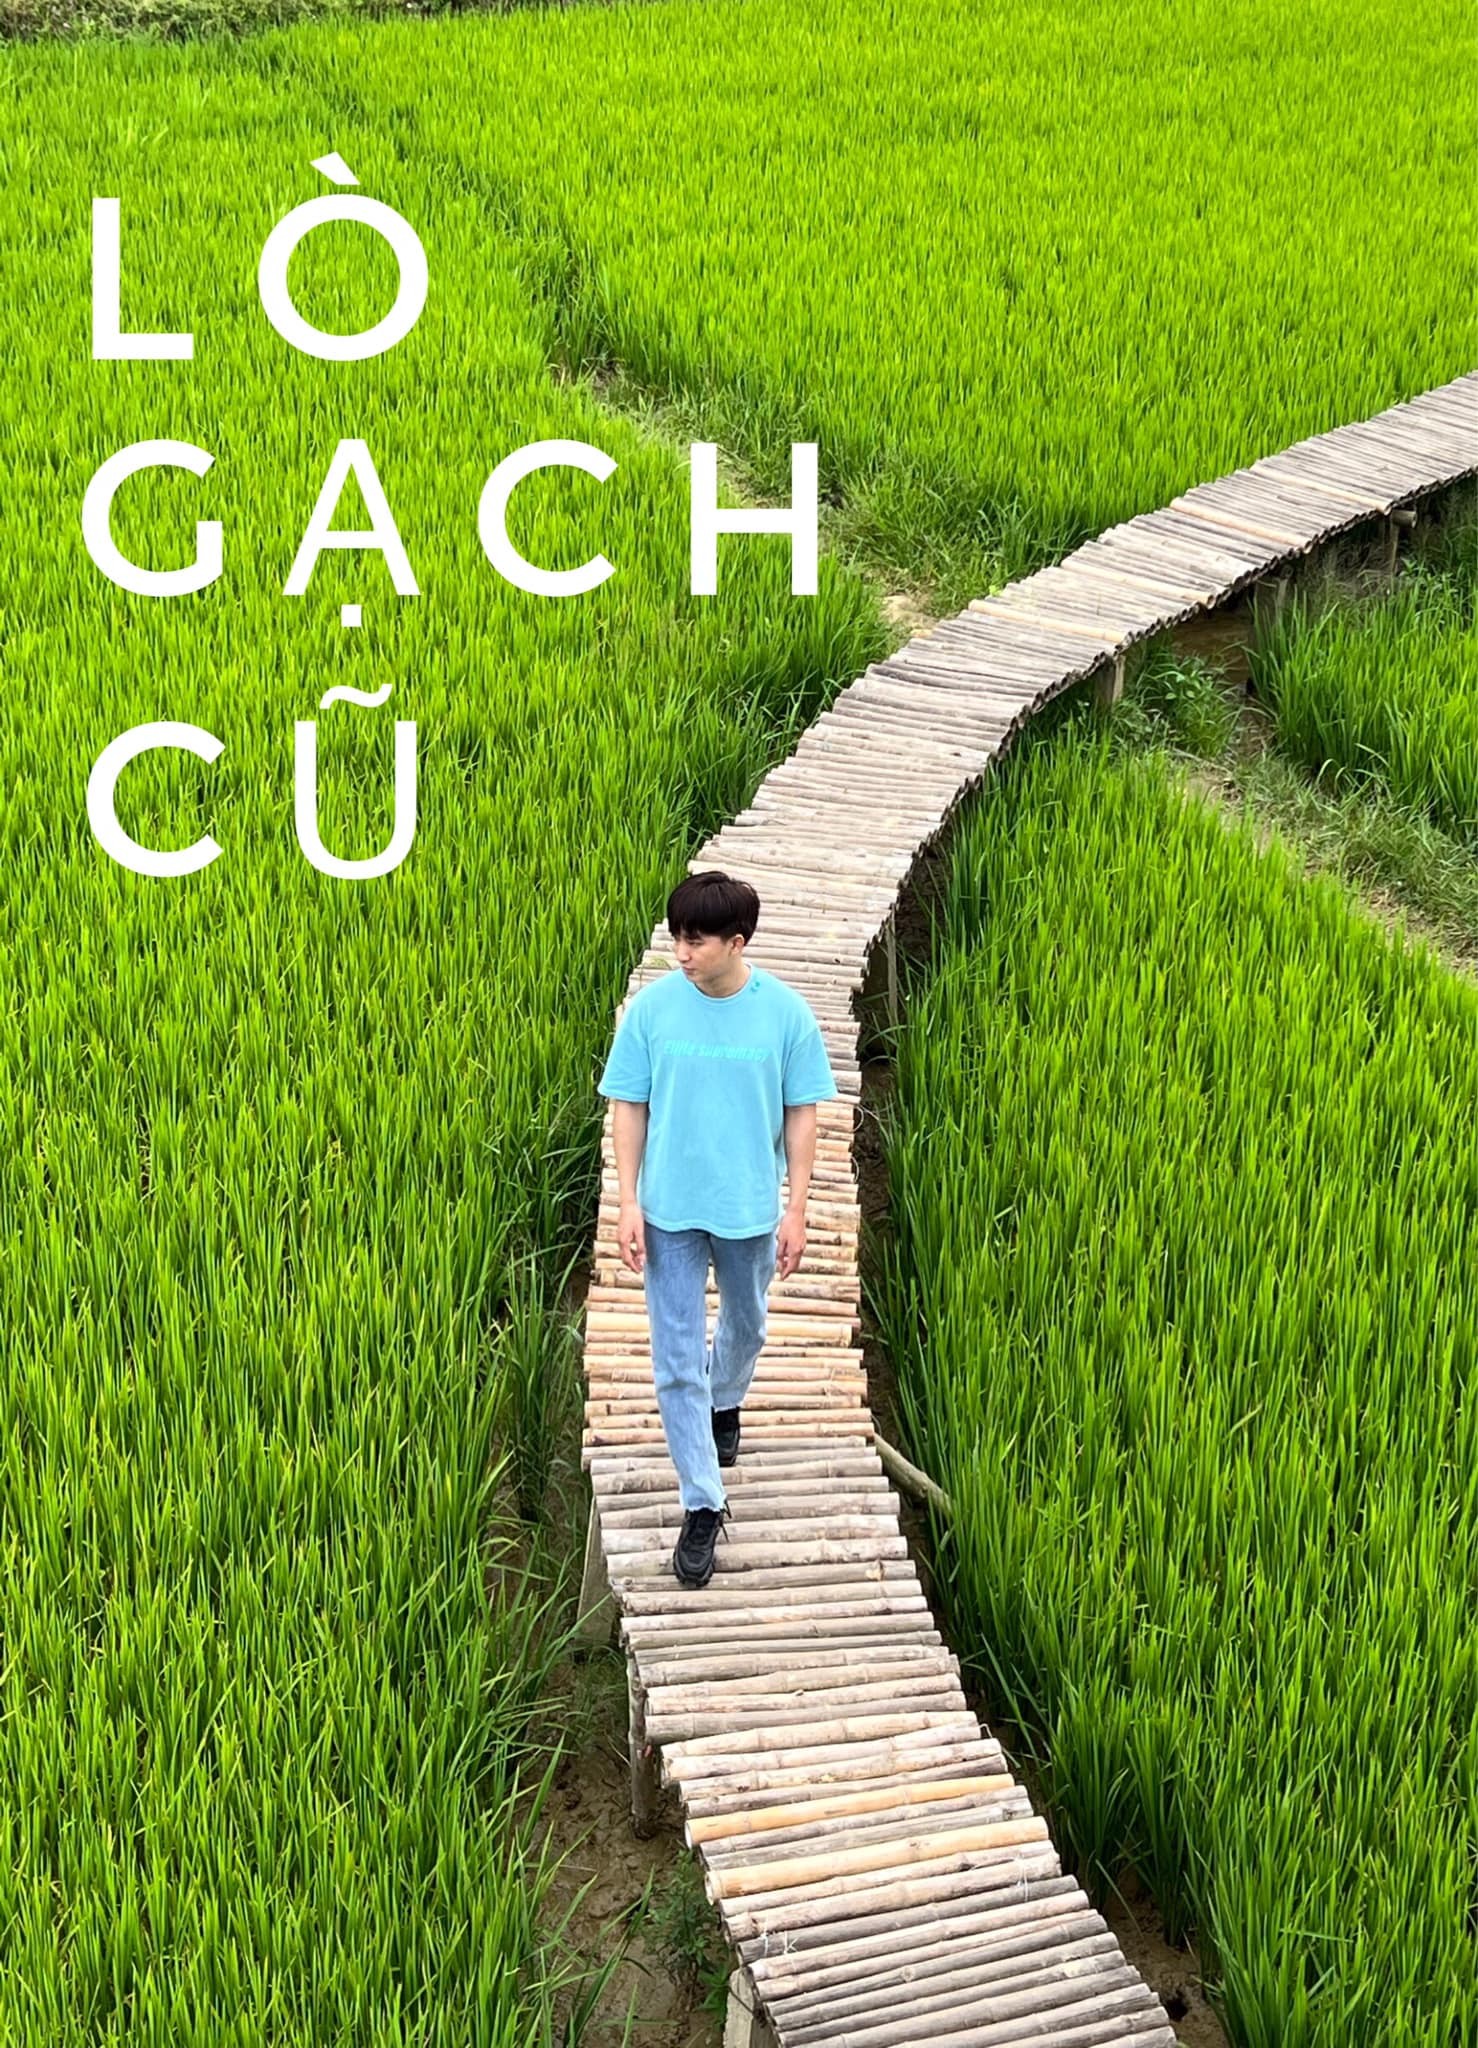 lo-gach-cu-1649035049.jpeg